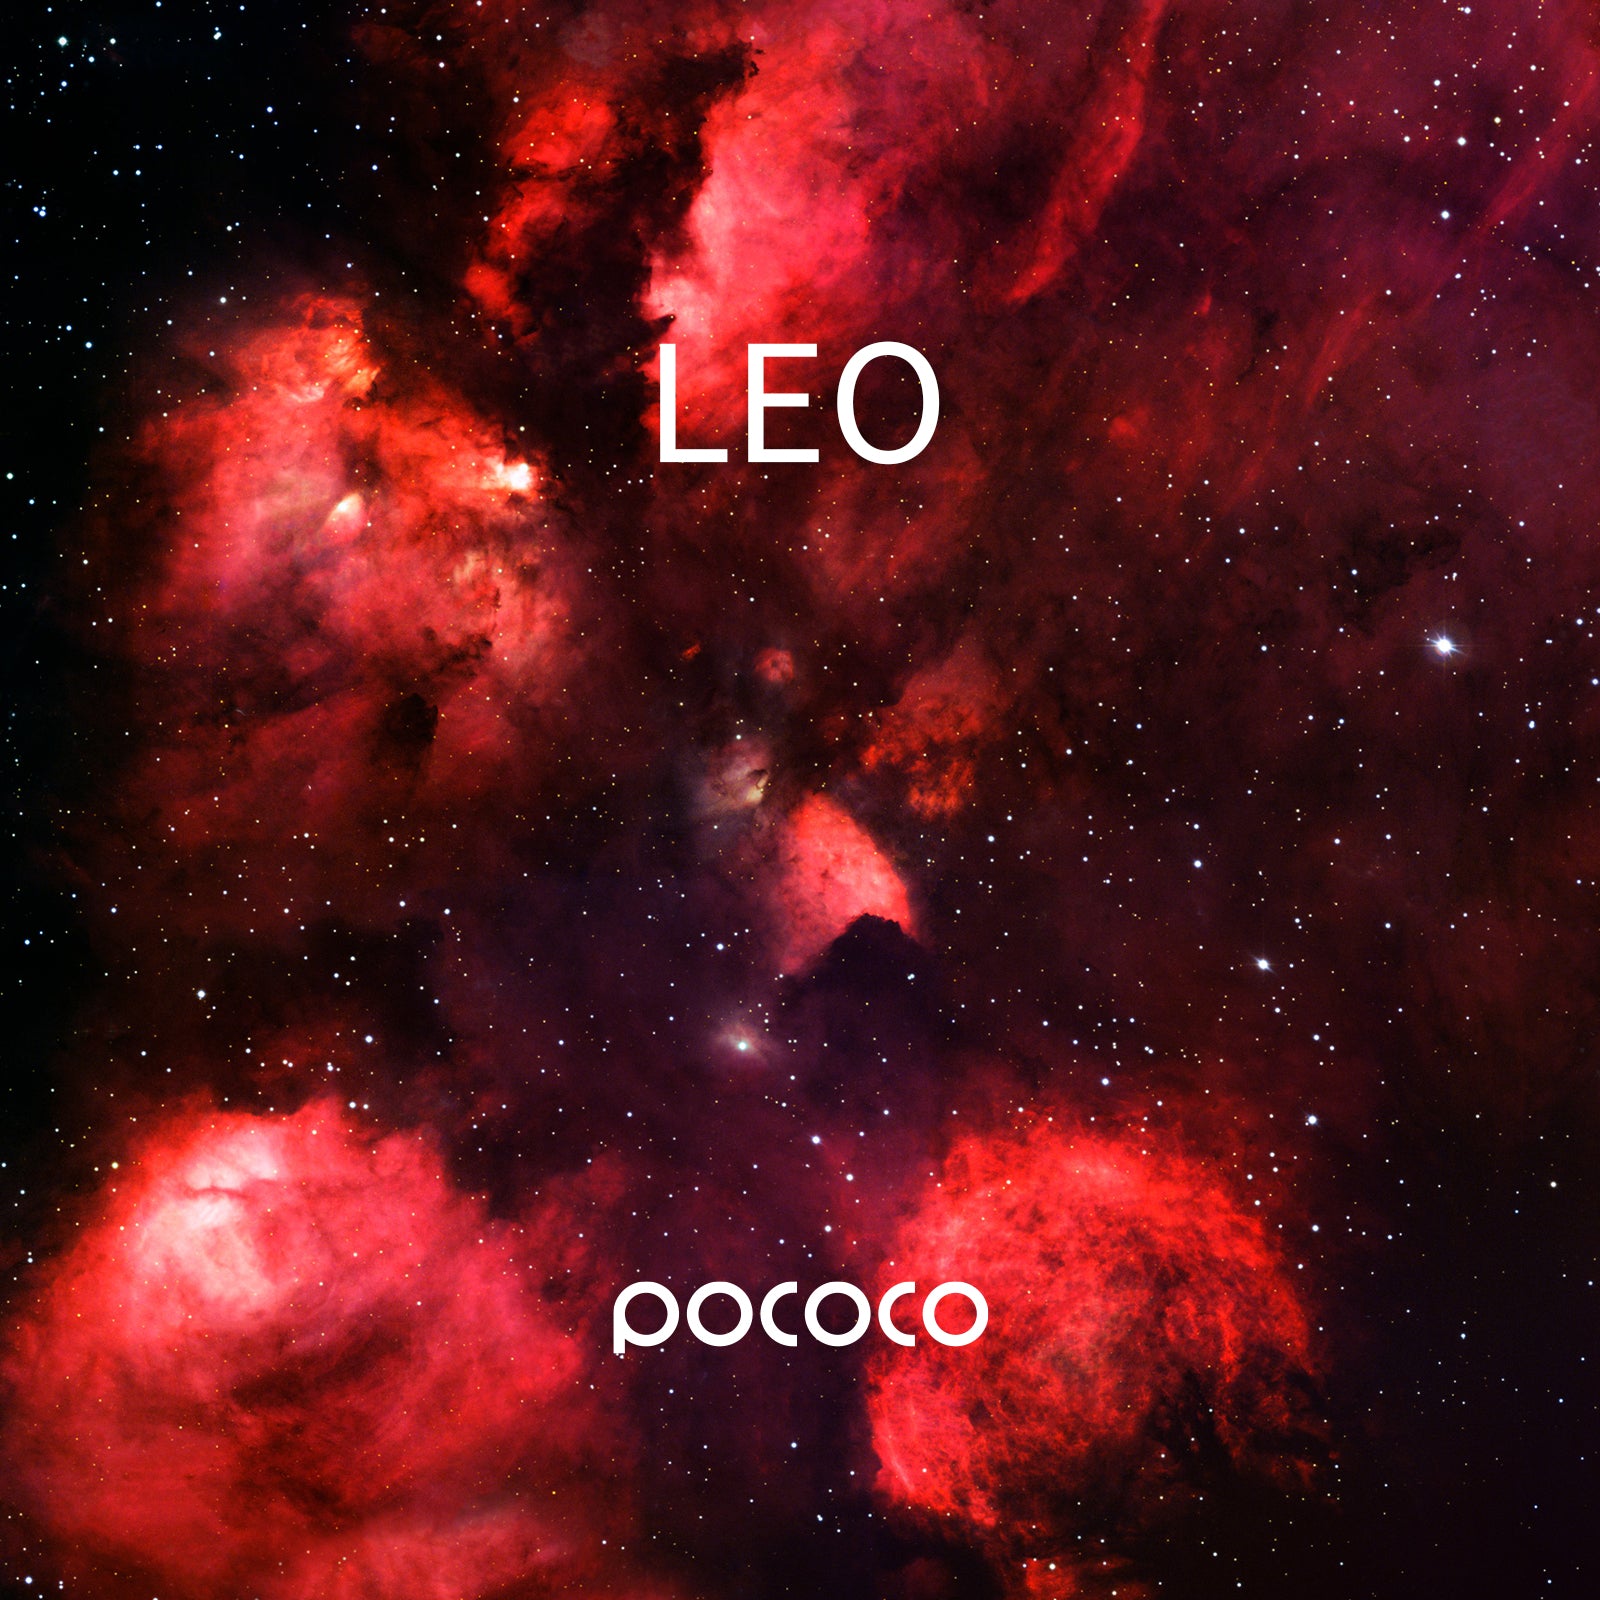 POCOCO Galaxy Projector Disc - Leo